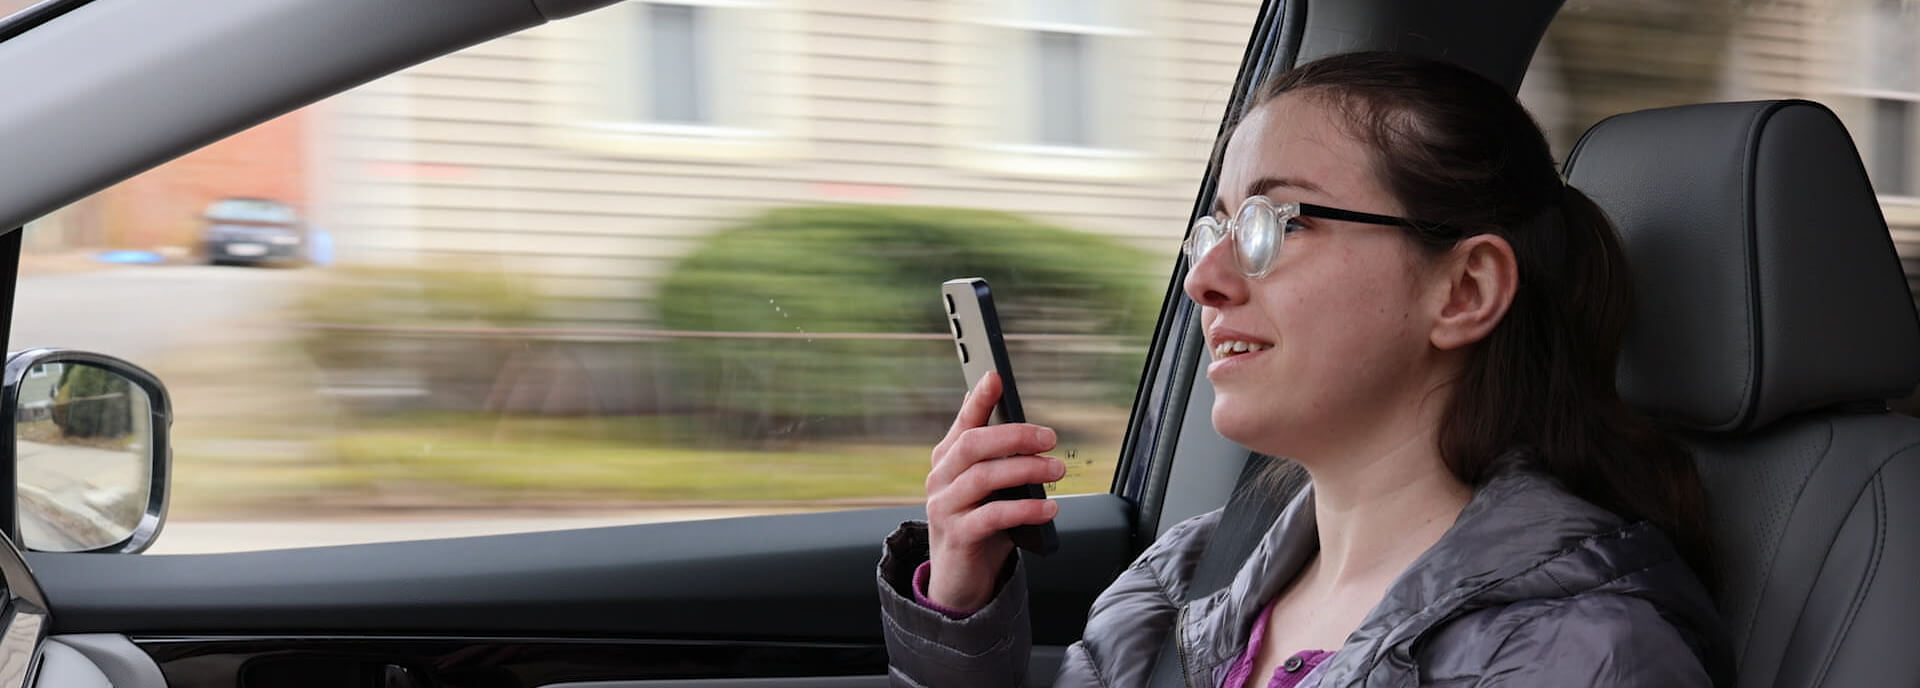 Honda develops app to enhance journeys in motor vehicles for the blind video-banner